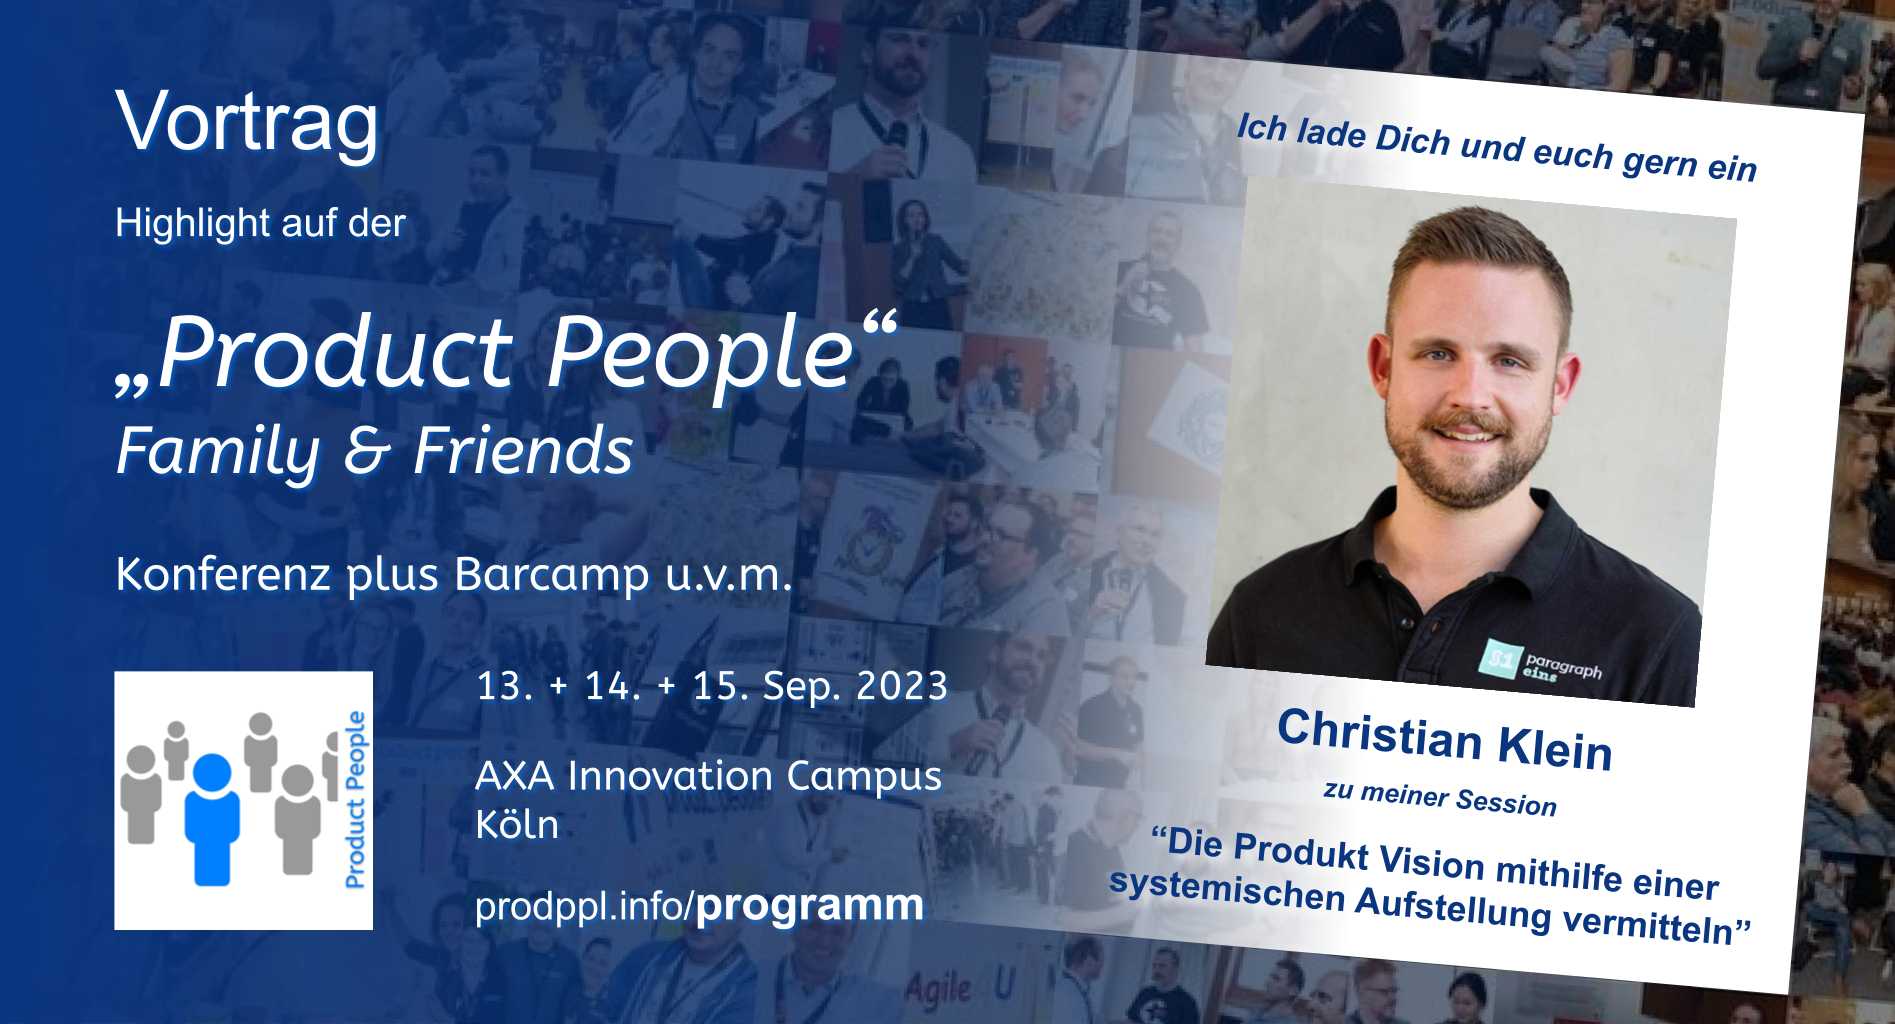 "Die Produkt Vision mithilfe einer systemischen Aufstellung vermitteln" - Vortrag von und mit Christian Klein - auf der "Product People - Family & Friends" - Konferenz plus Barcamp - Köln 2023